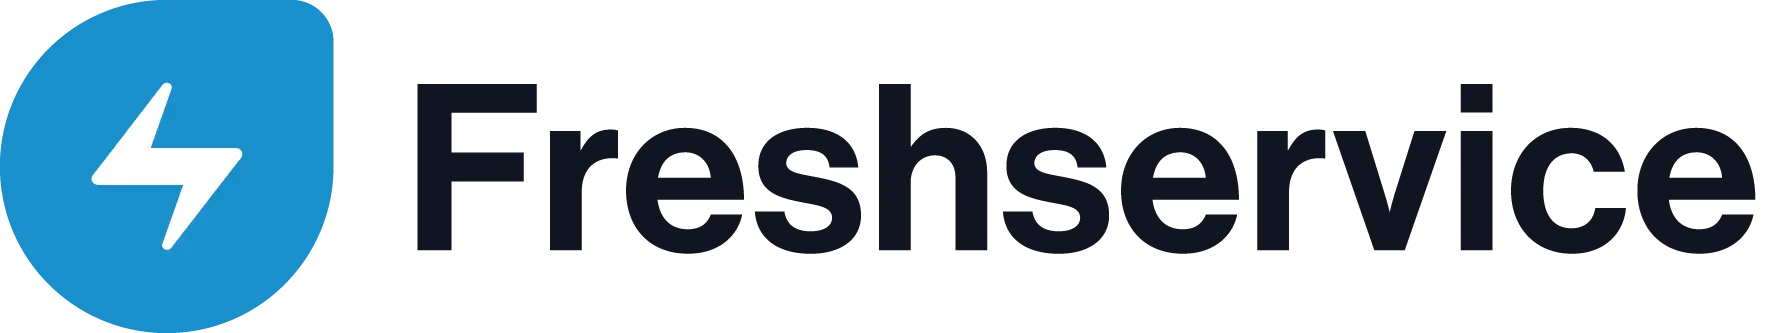 Image of the Freshservice logo